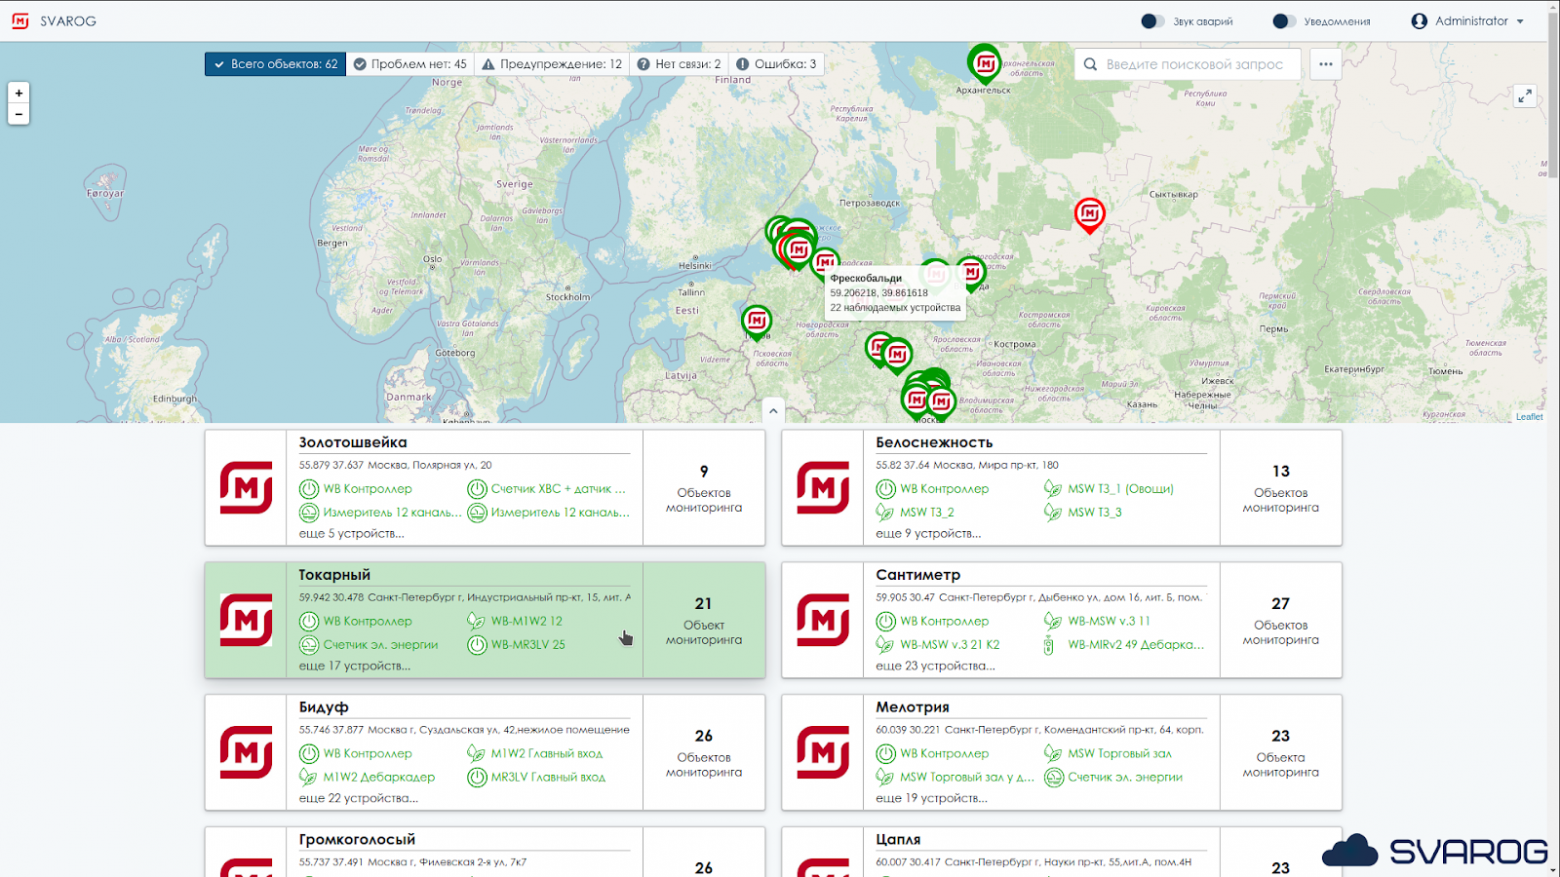 Обзорная карта магазинов в сервисно-аналитической платформе SVAROG